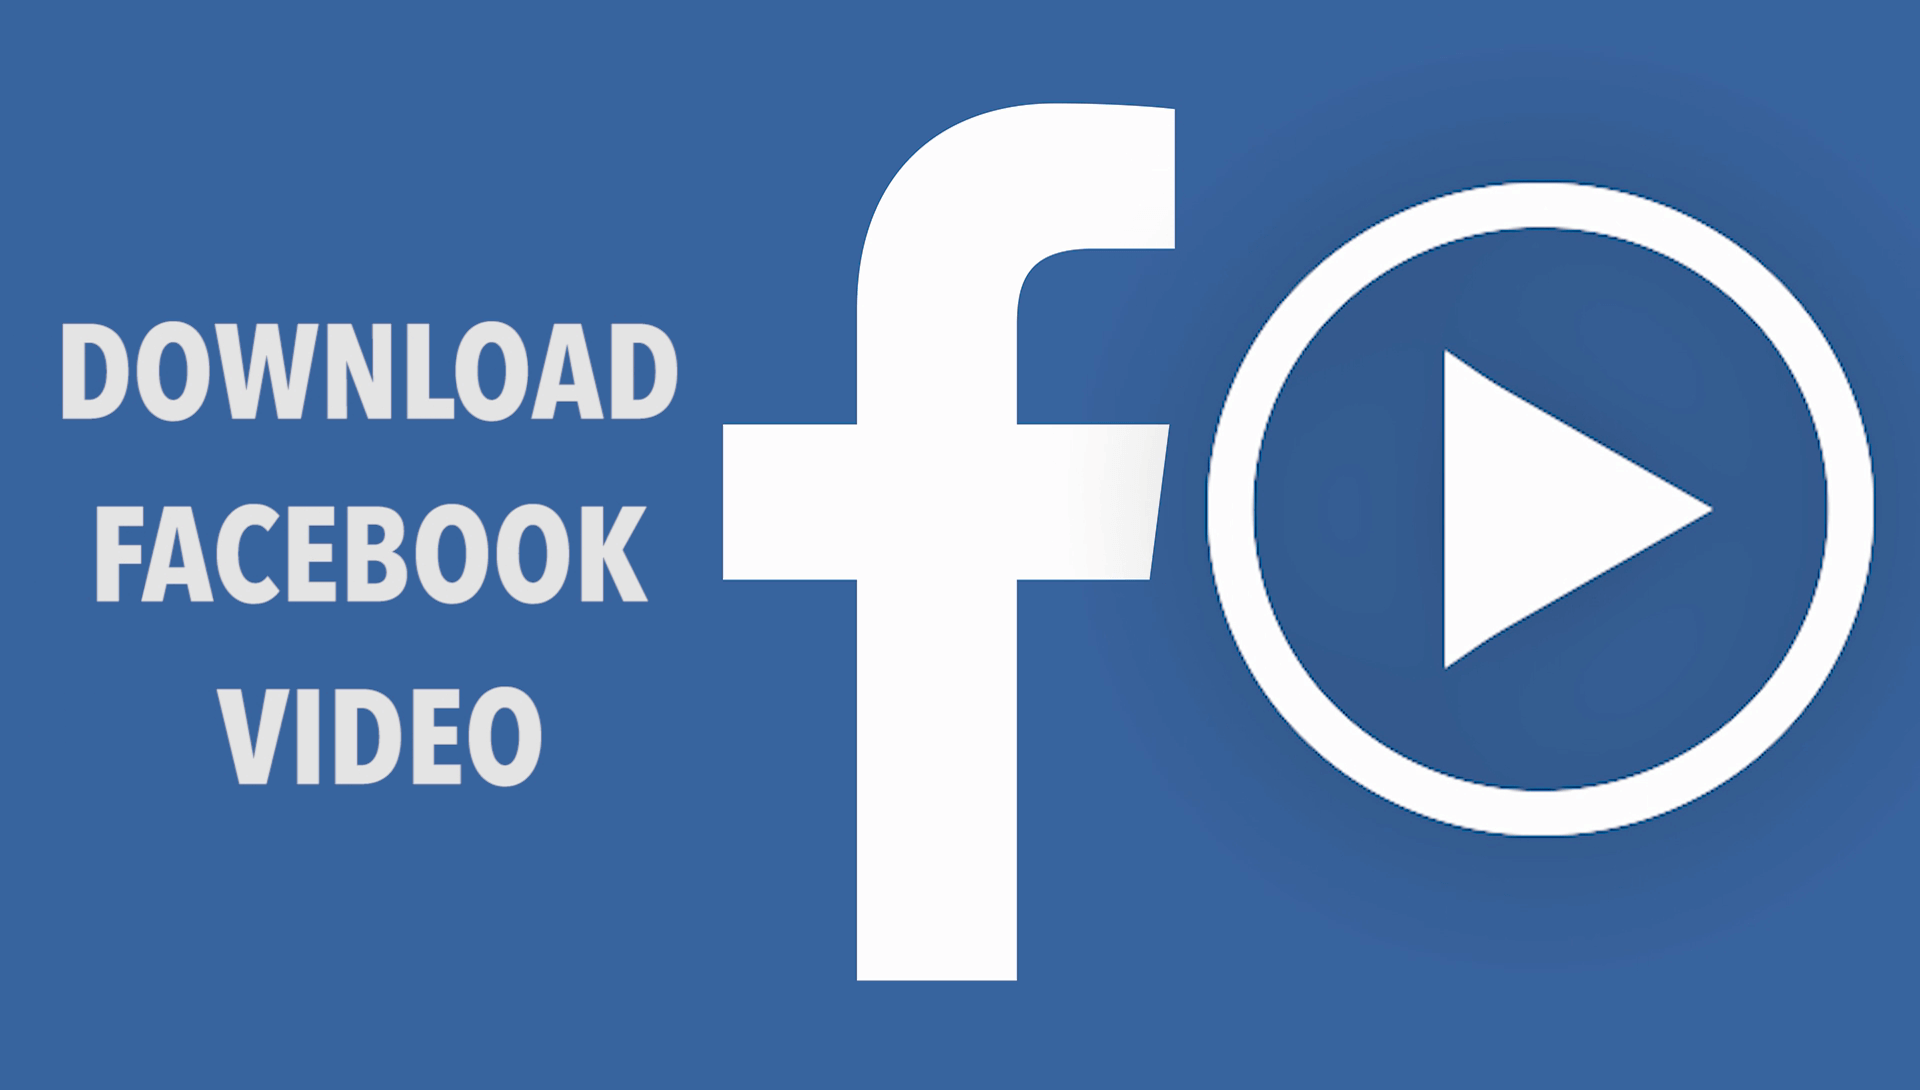 كيفية تحميل فيديو من الفيس بوك بجودة عالية 1